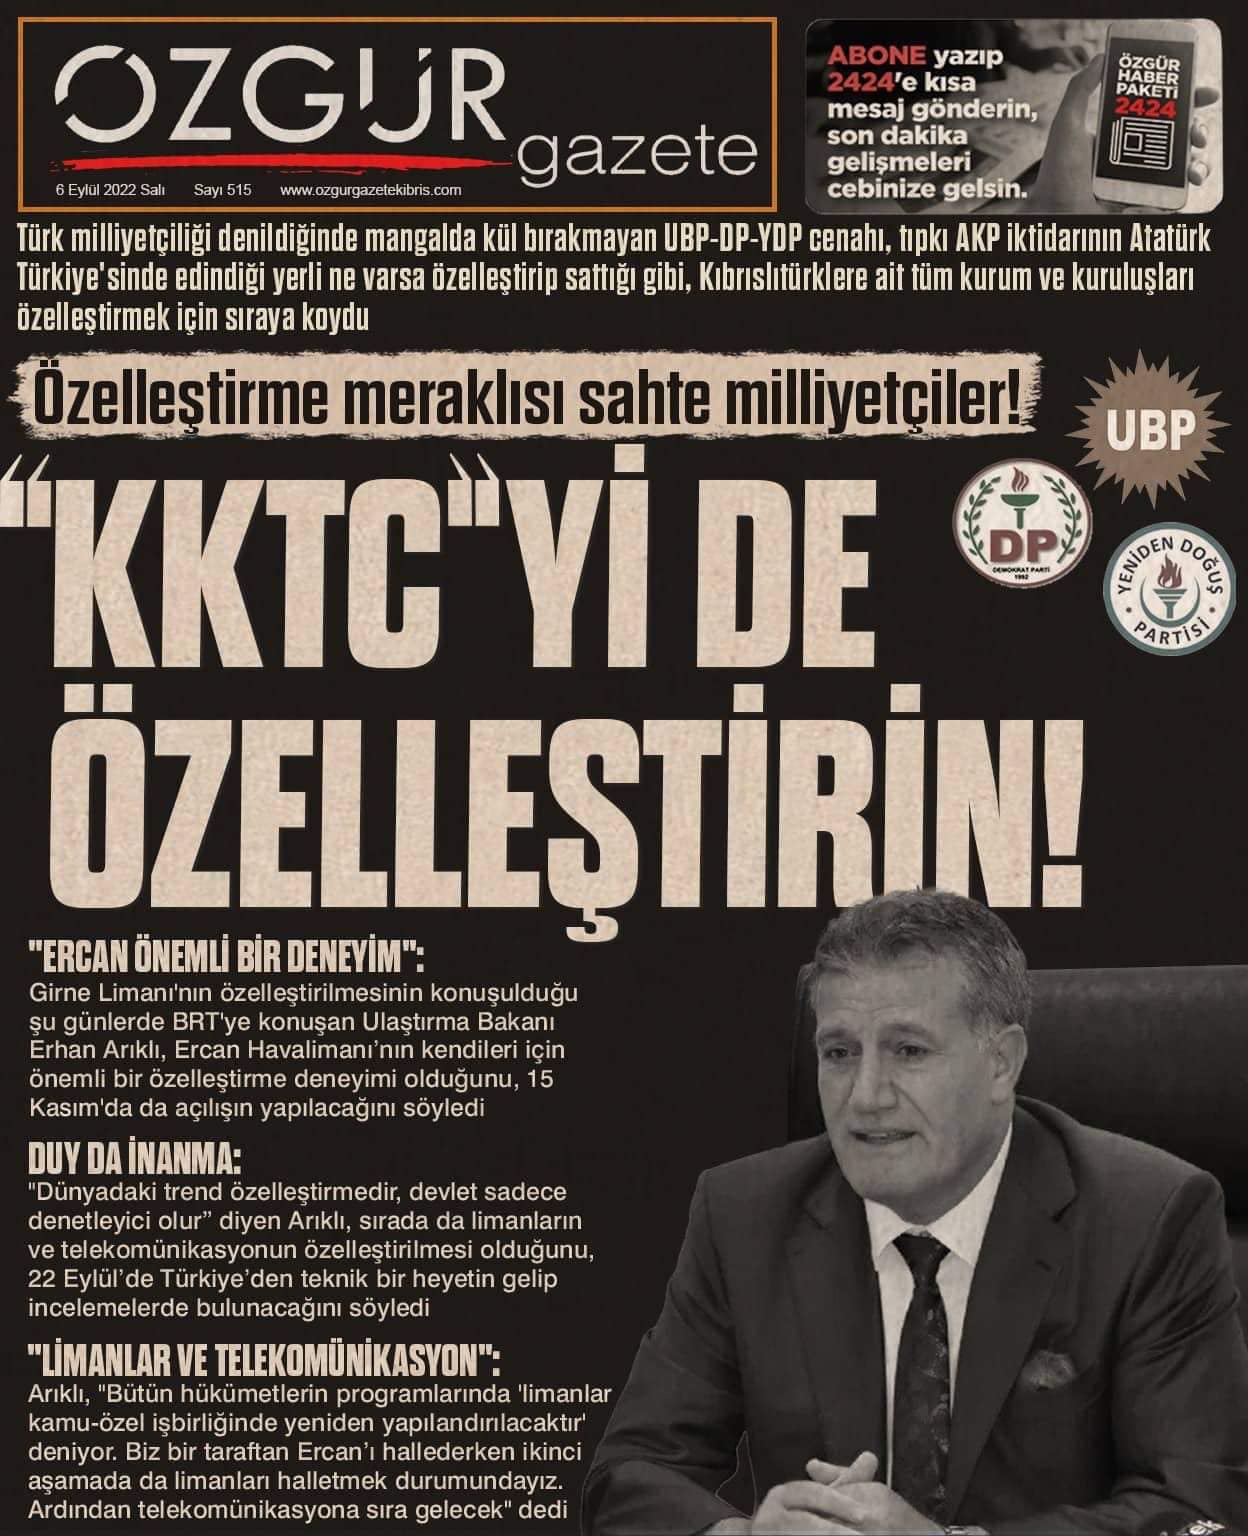 ozgur_gazete_kibris_ozellestirme_Arikli